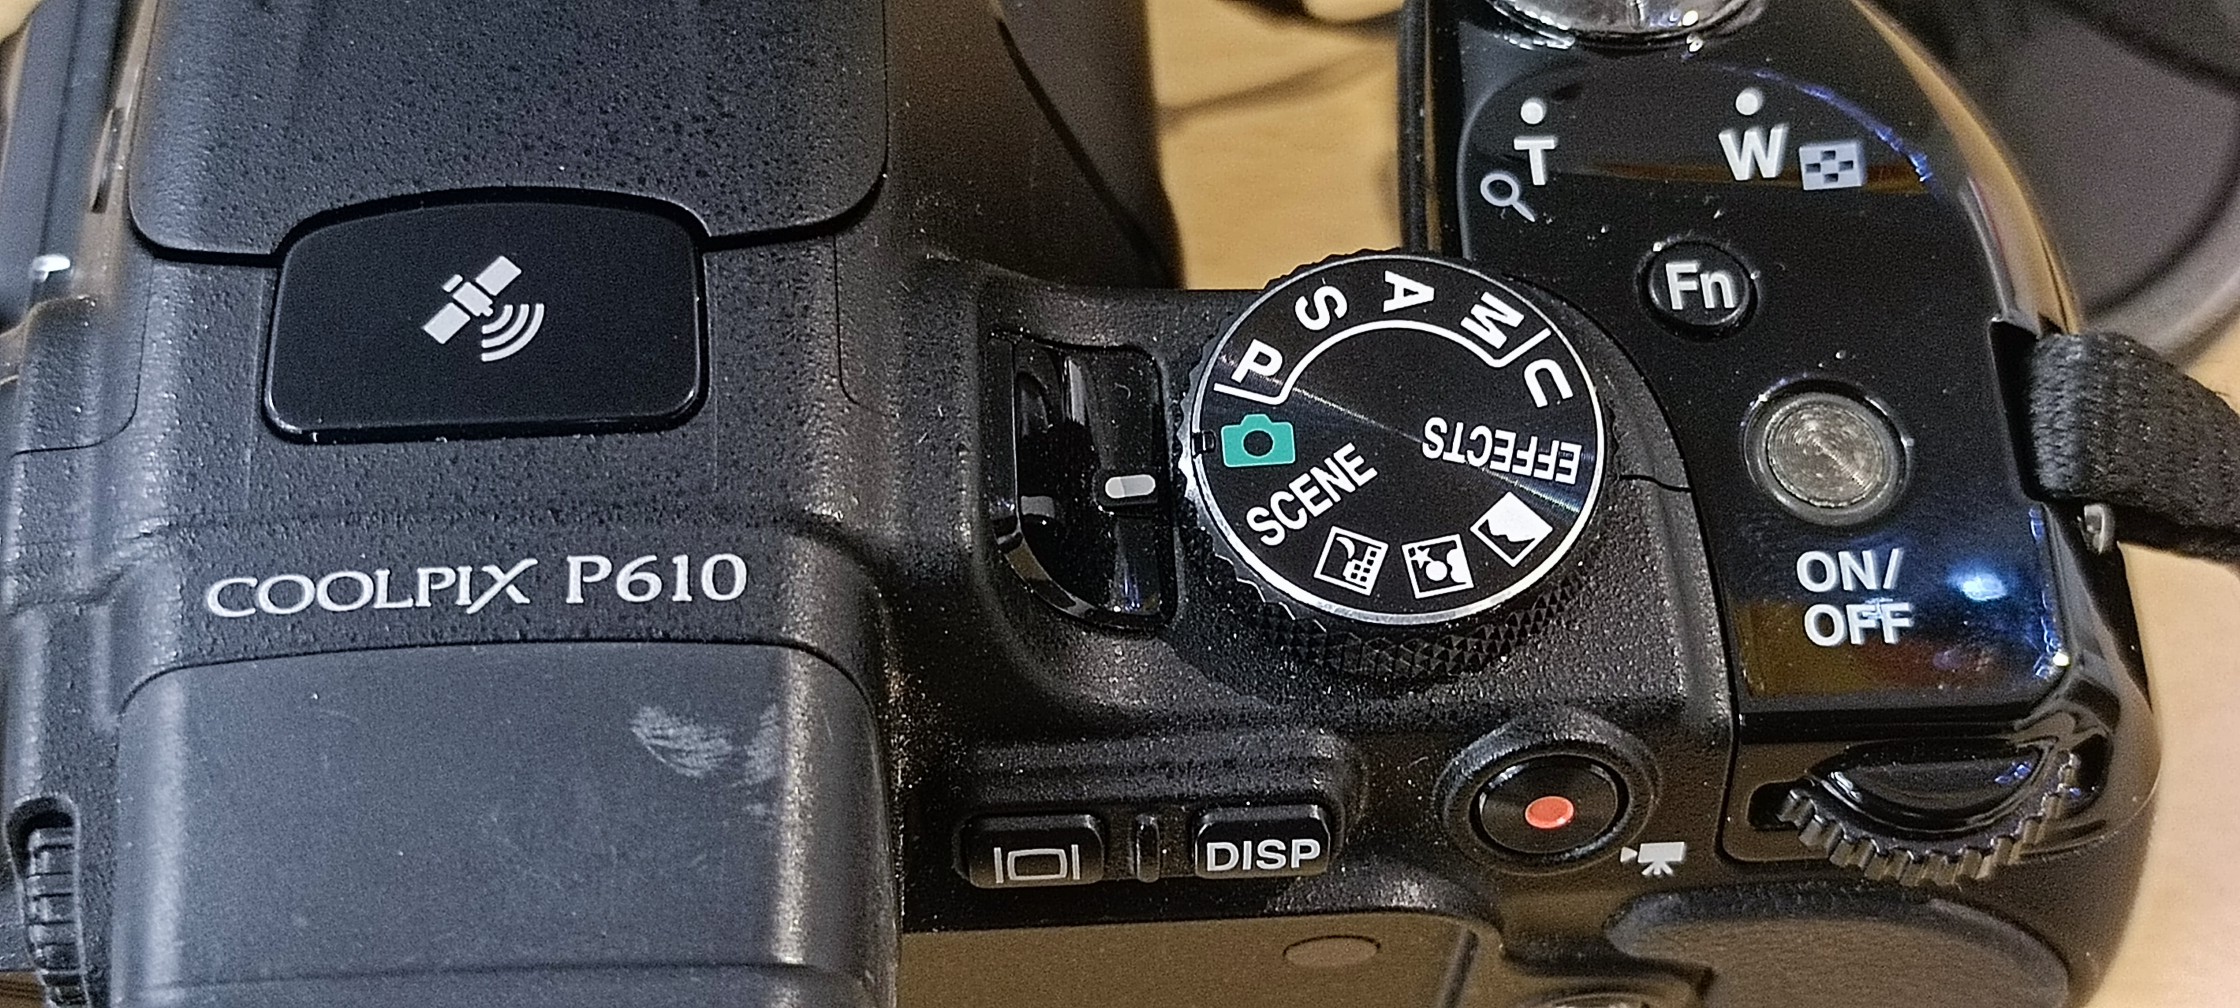 camaras y audio - Nikon Coolpix P610 63x zoom 1440 mm.  Excelentes condiciones 8